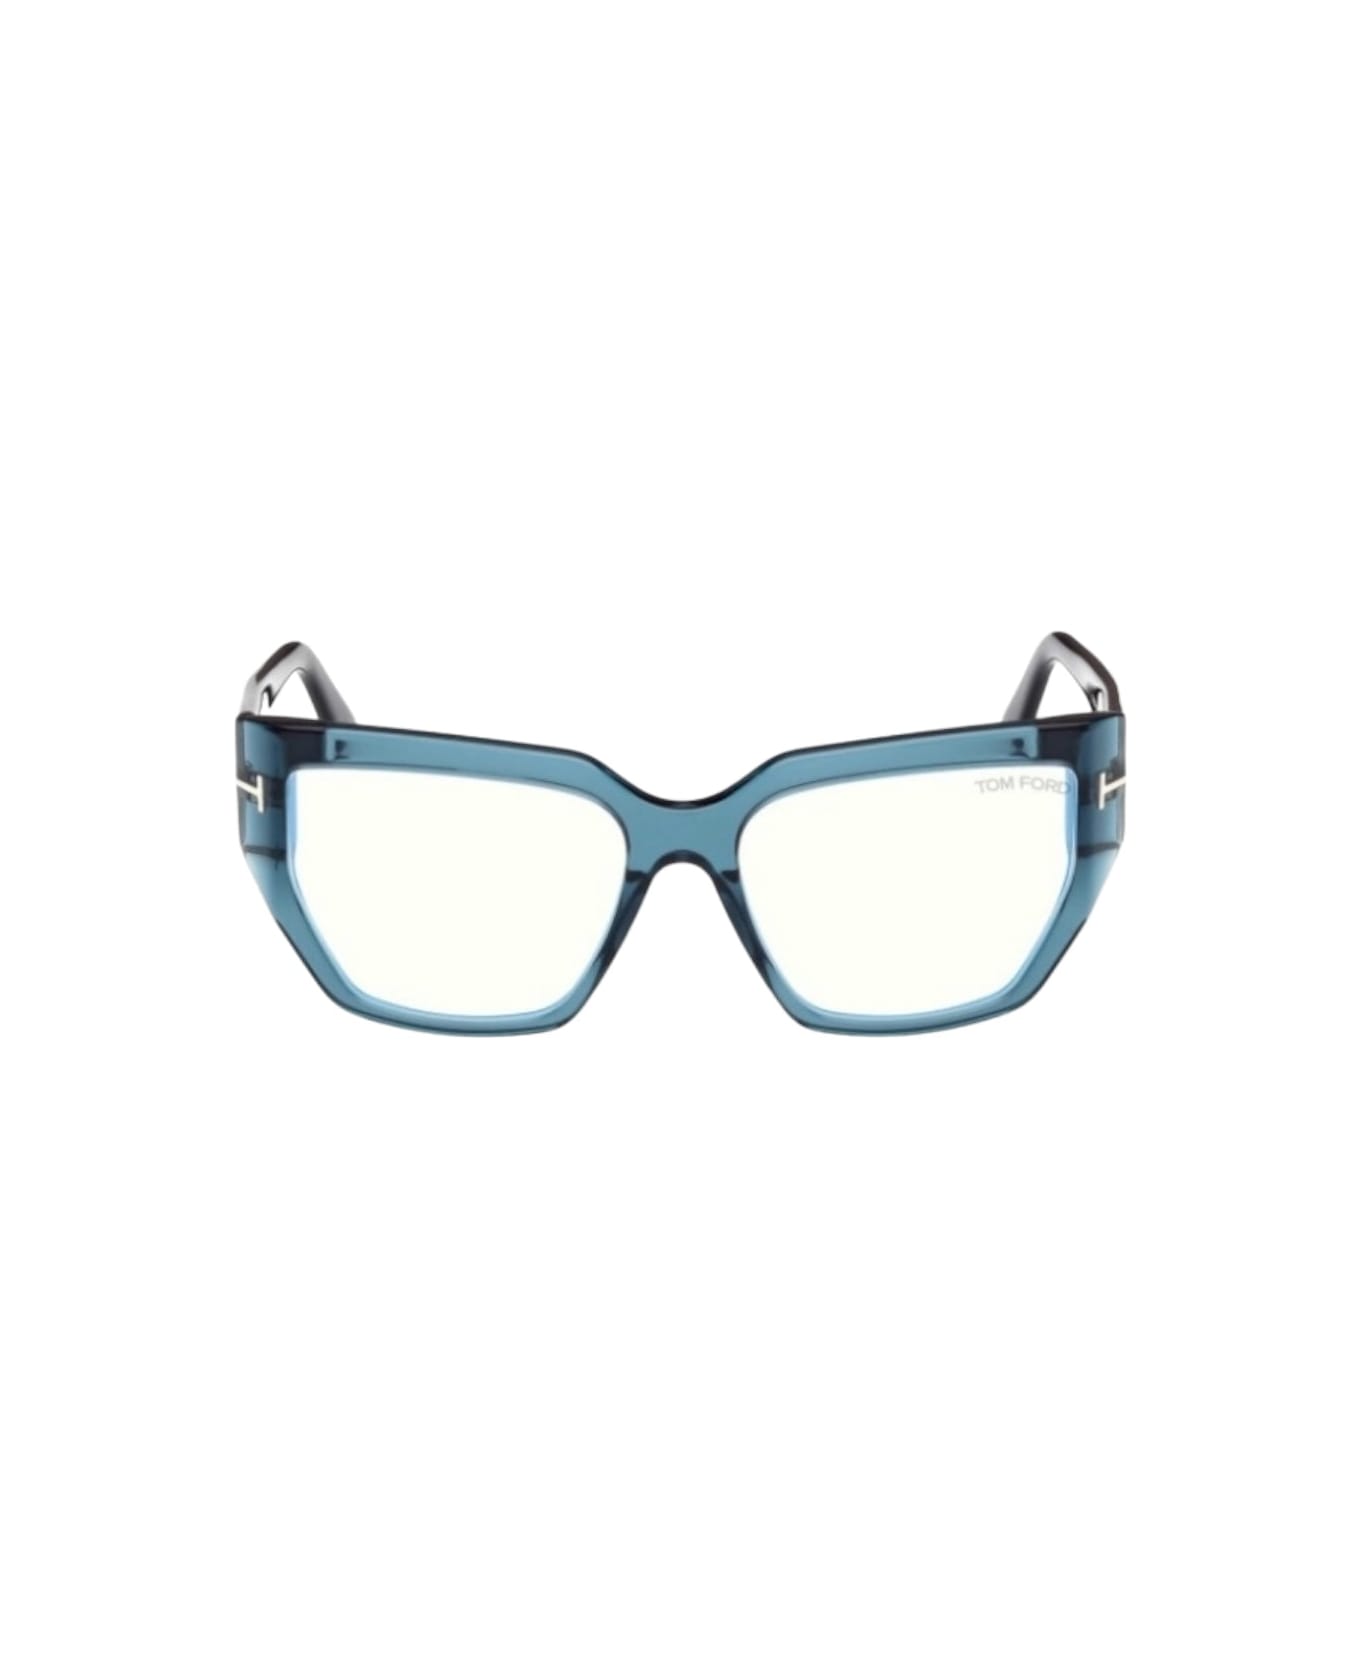 Tom Ford Eyewear Ft5951- Celeste Glasses